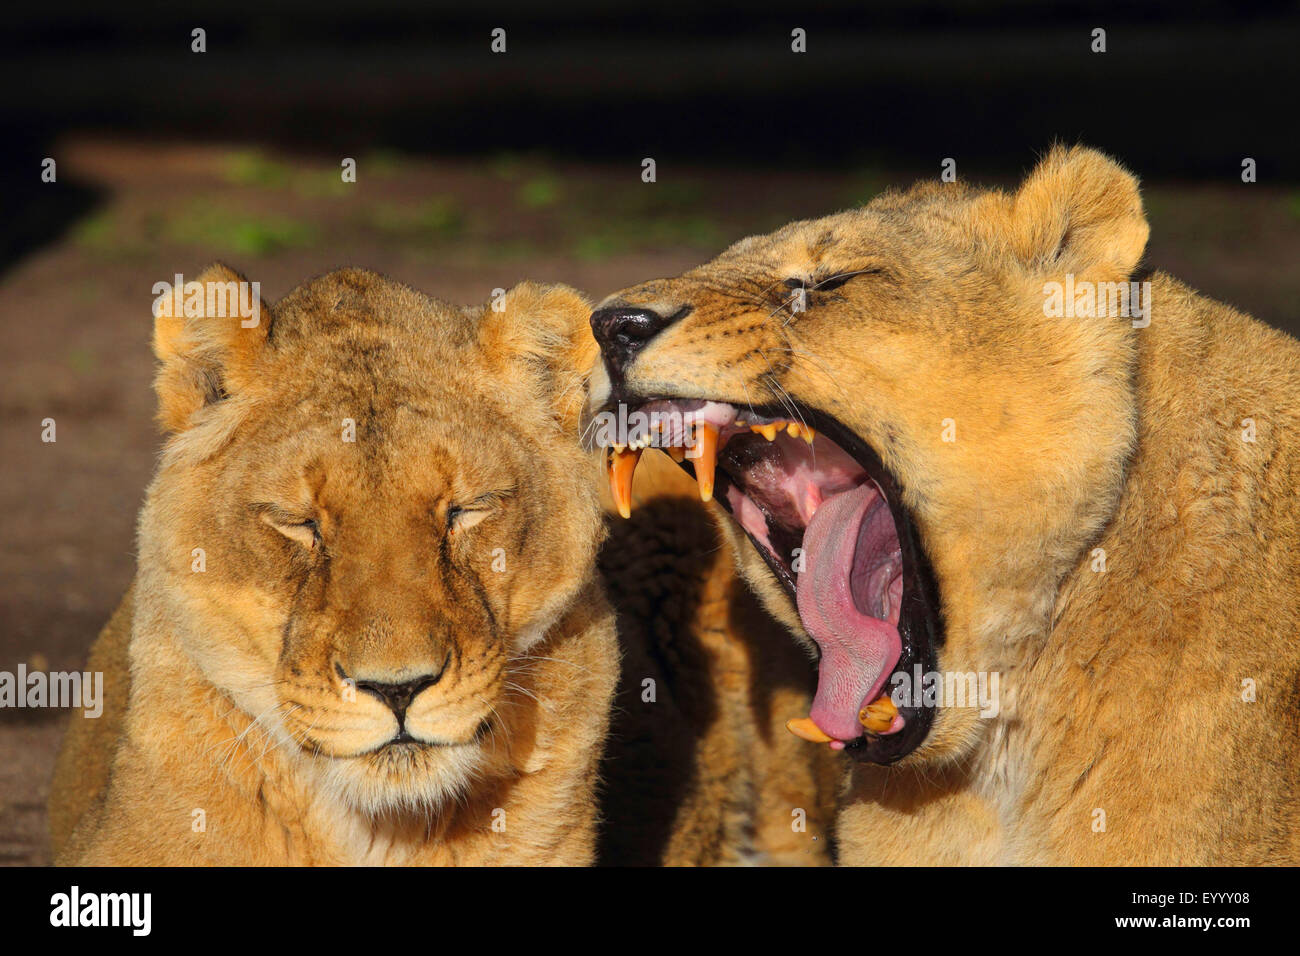 Lion d'Asie (Panthera leo persica), deux lionnes fatigué Banque D'Images